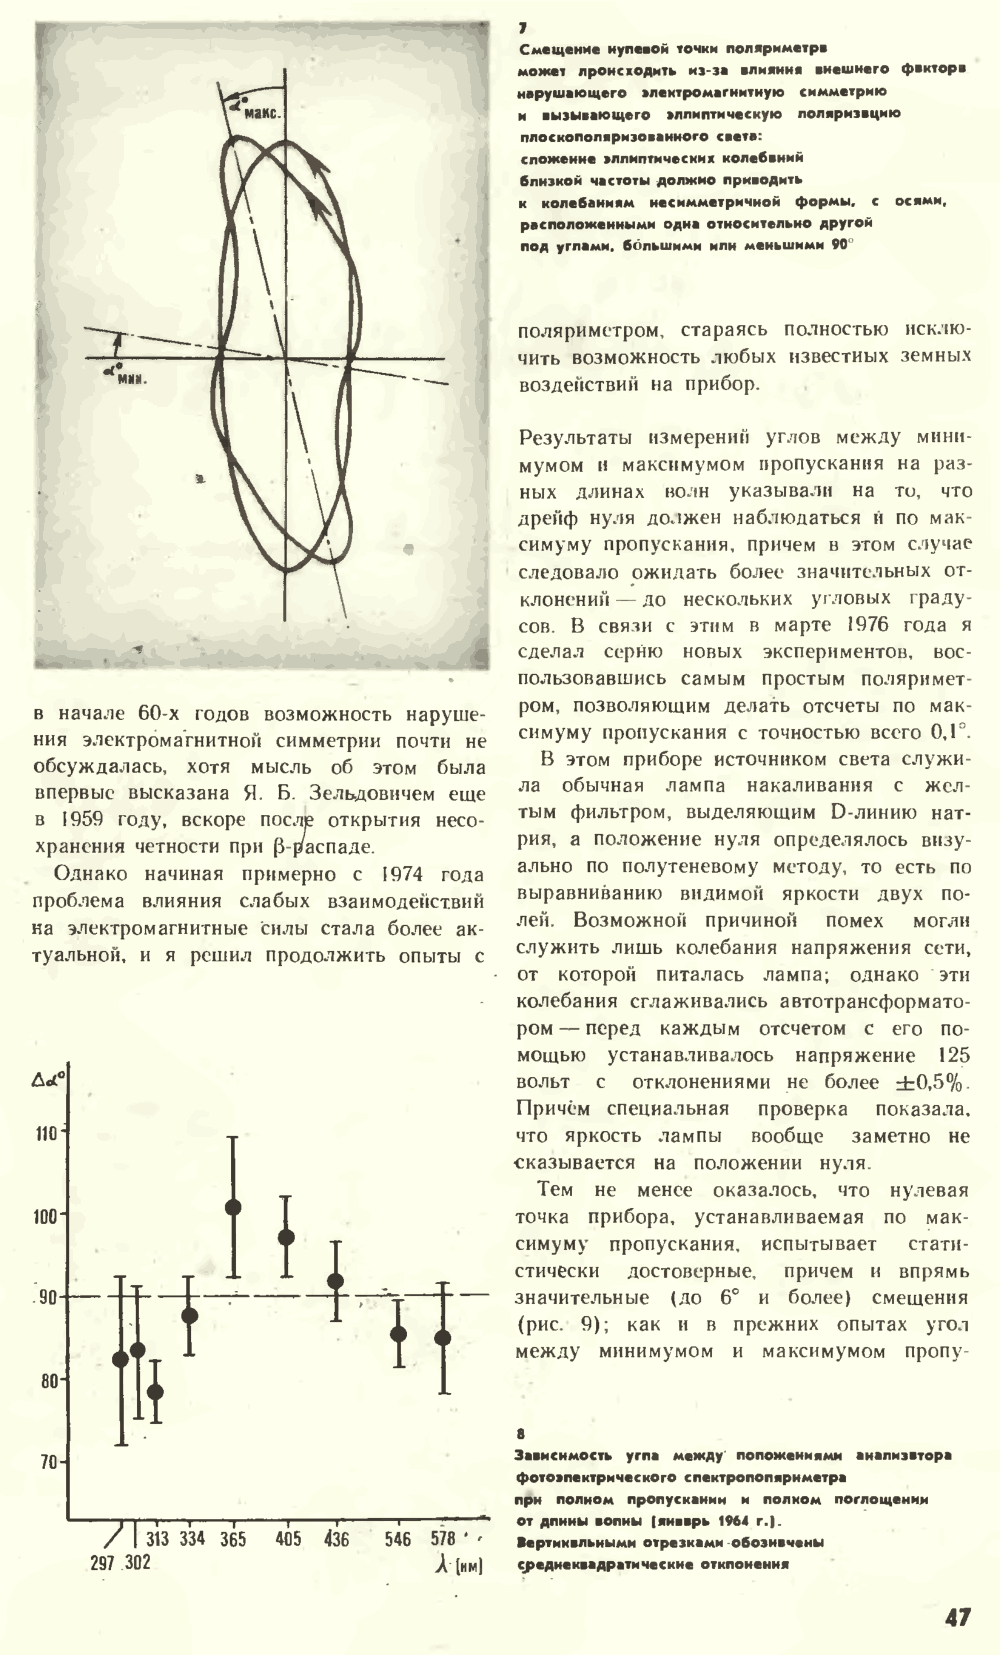 Что нарушает симметрию? В.Е. Жвирблис. Химия и жизнь, 1977, №12, с.42-49. Фотокопия №6